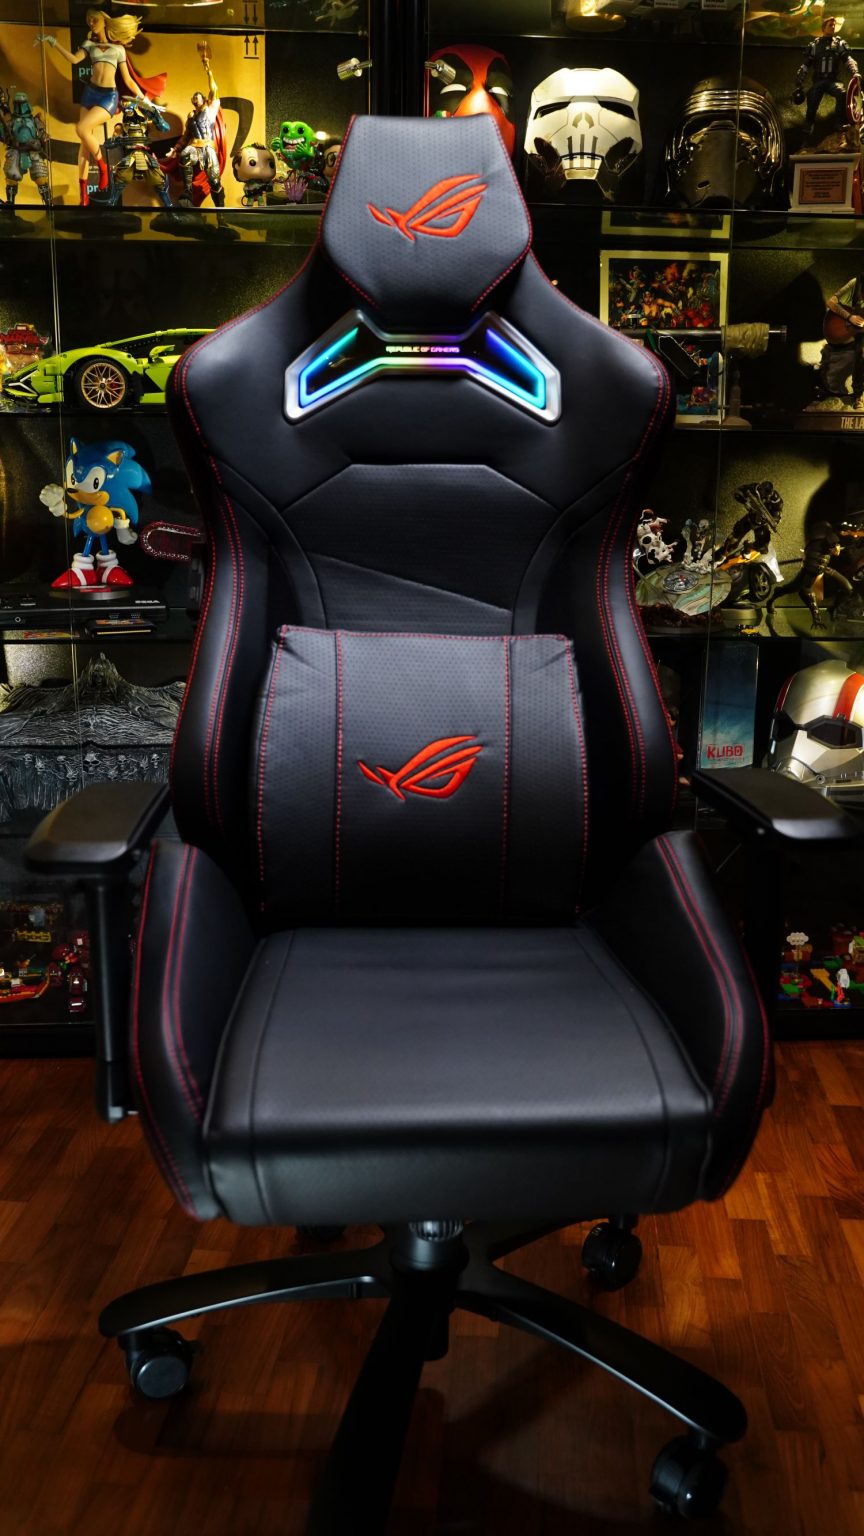 Geek Review: ASUS ROG Chariot RGB Gaming Chair | Geek Culture